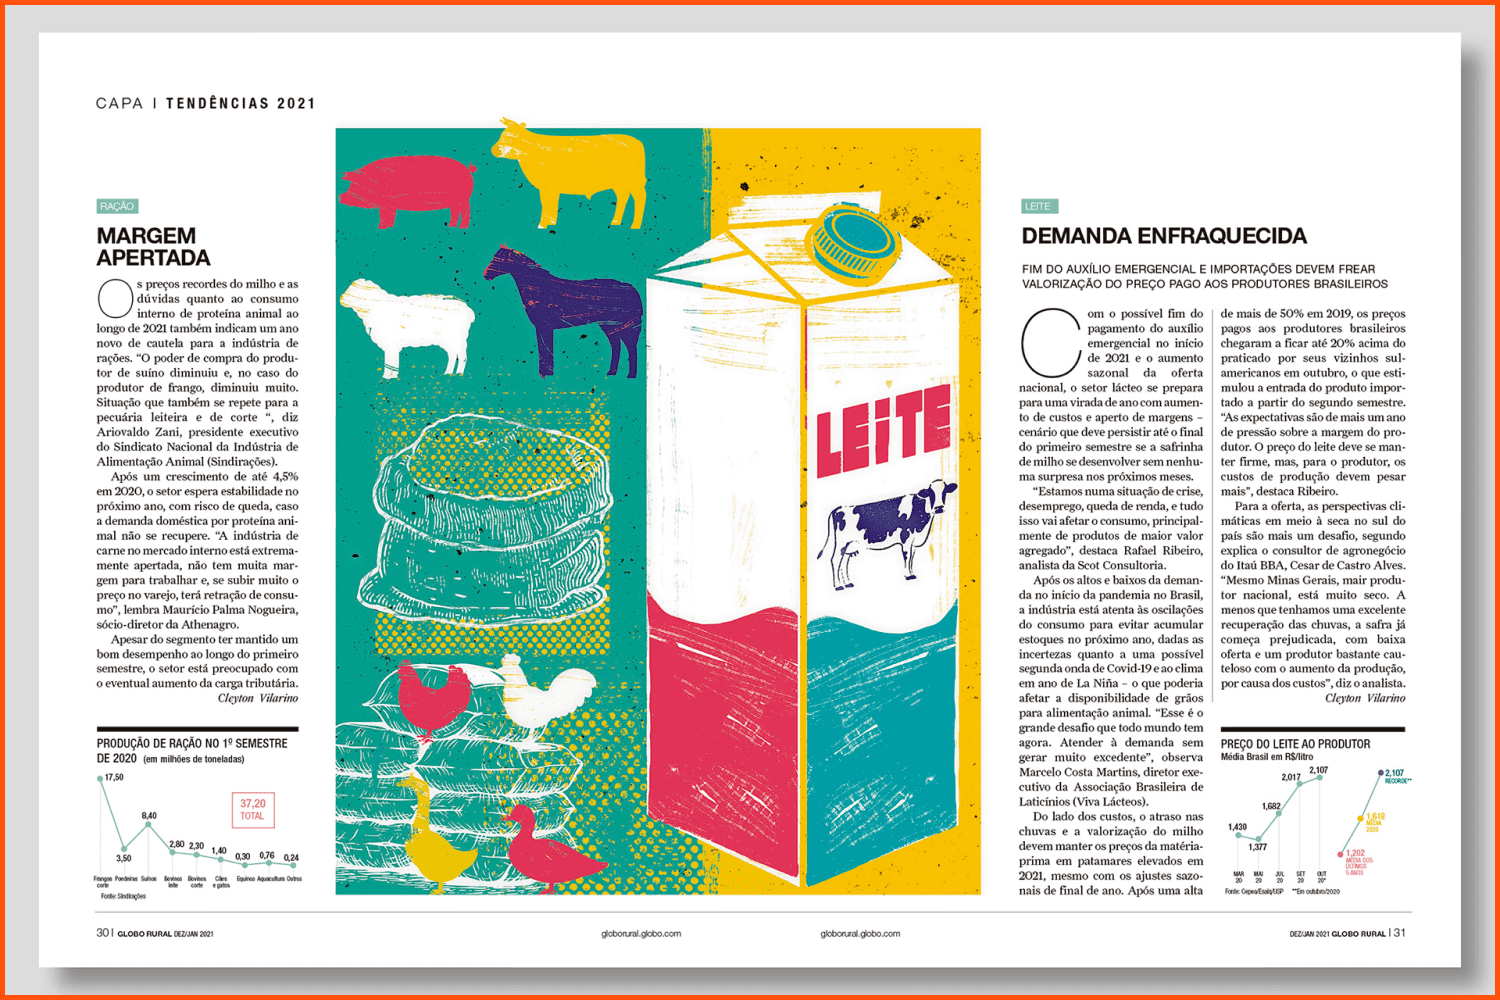 Illustrations for Globo Rural magazine.